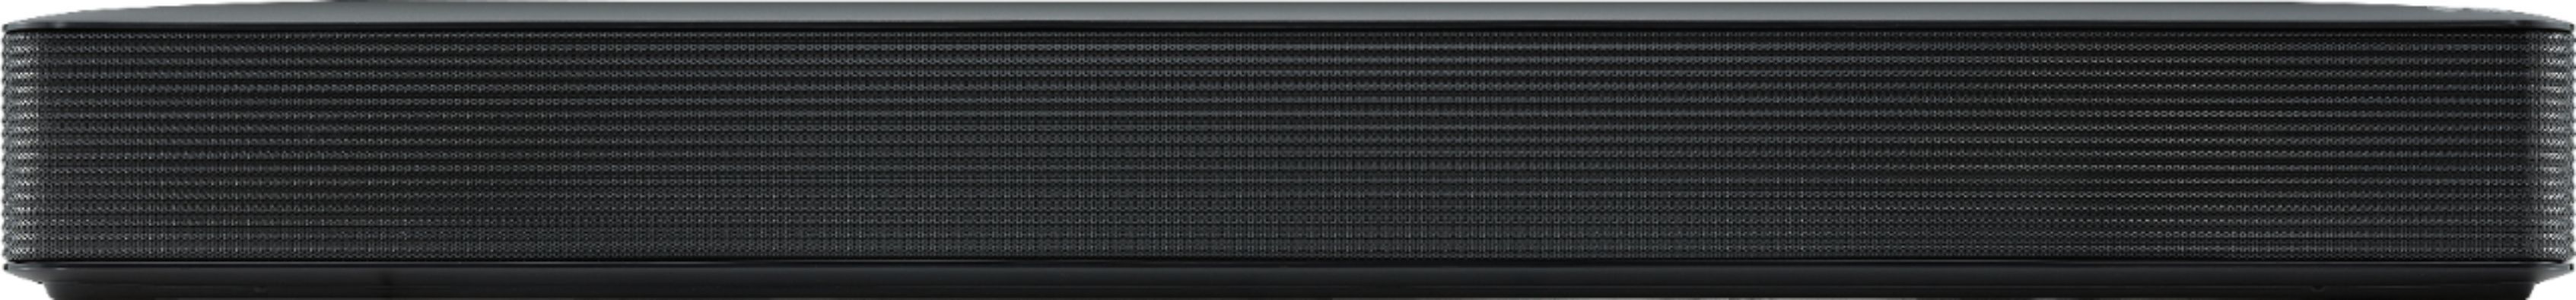 LG 2.0-Channel Soundbar with 40-Watt Digital Amplifier Black SK1 - Best Buy | Best Buy U.S.